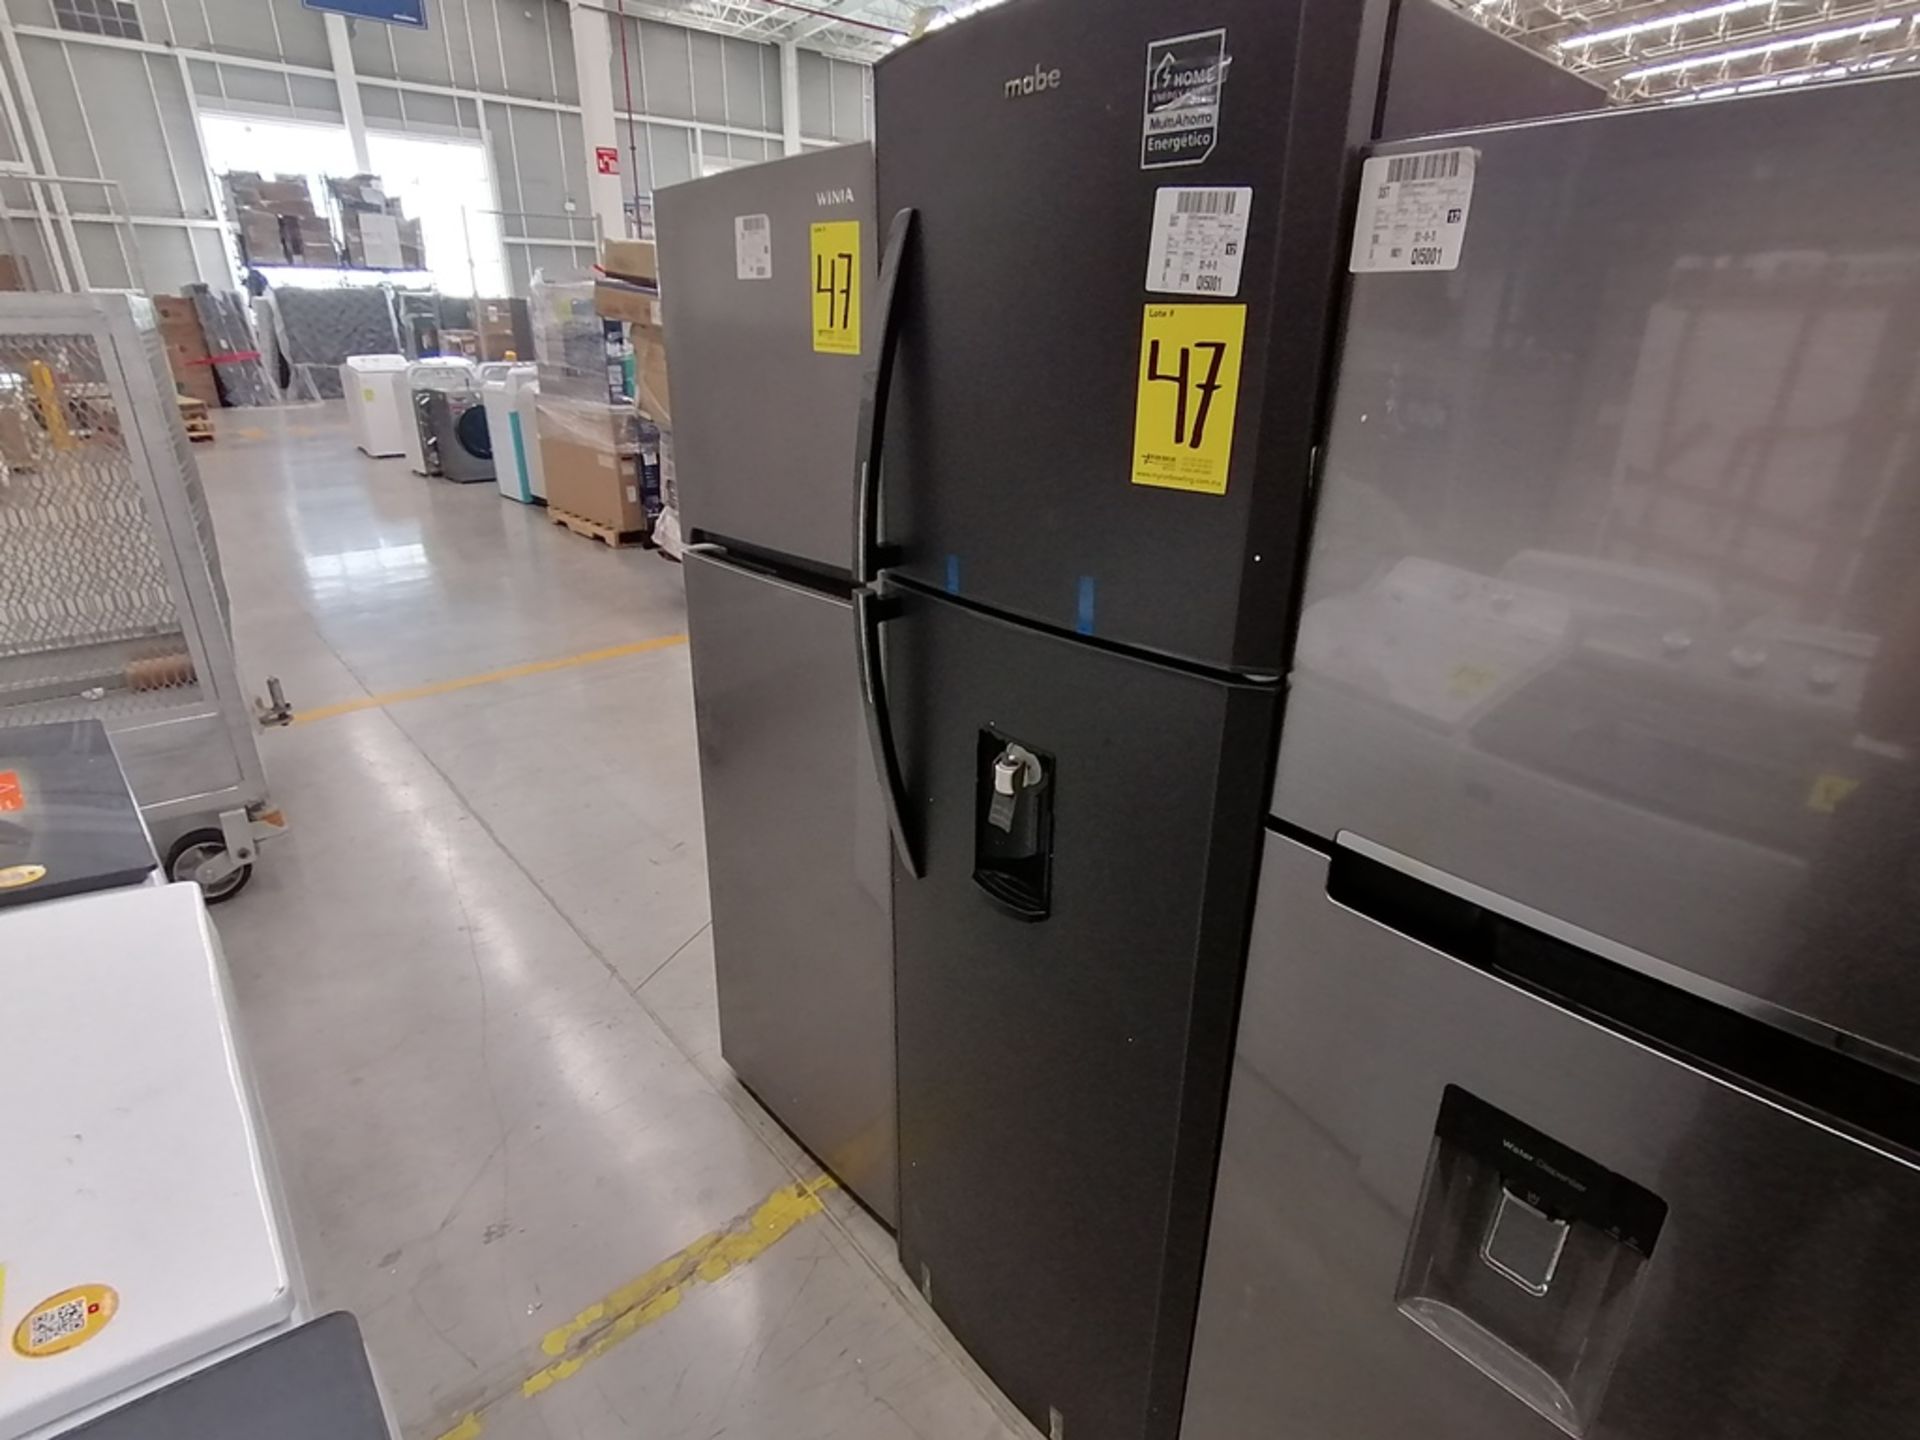 Lote de 2 refrigeradores incluye: 1 Refrigerador, Marca Winia, Modelo DFR32210GNV, Serie MR219N1206 - Image 8 of 15